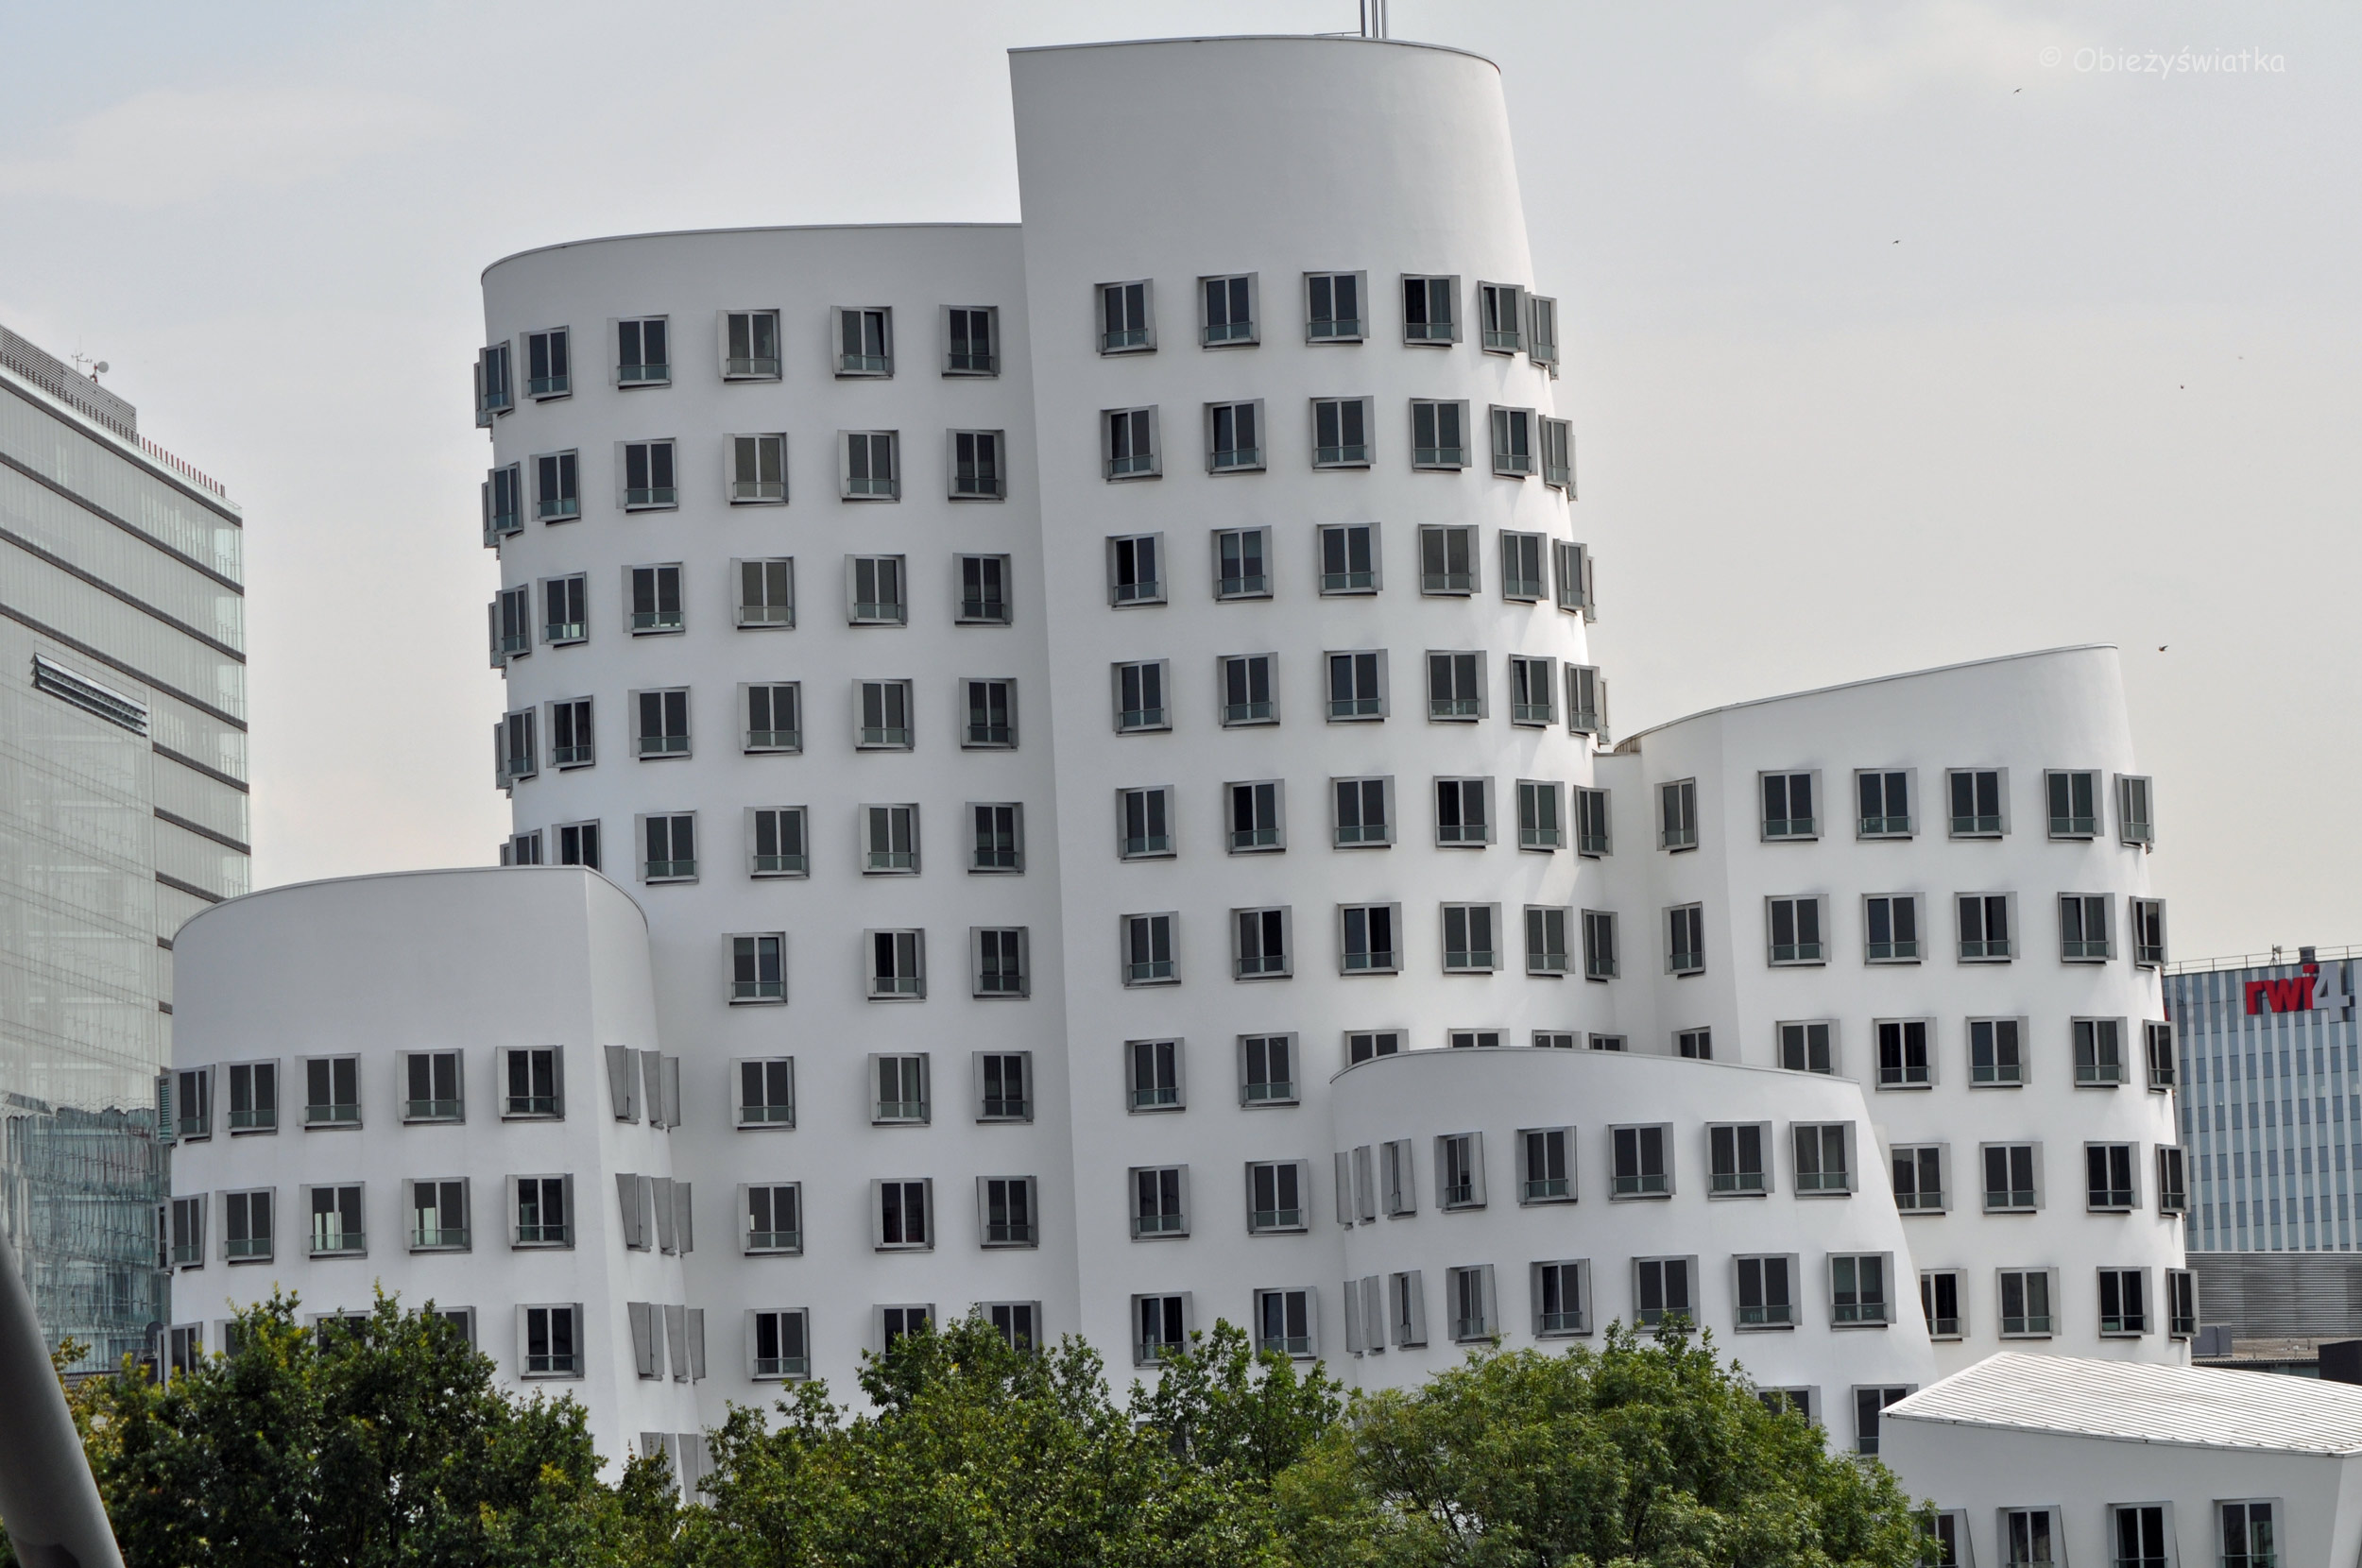 Neuer Zollhof - budynki Franka Gehry'ego w Düsseldorfie